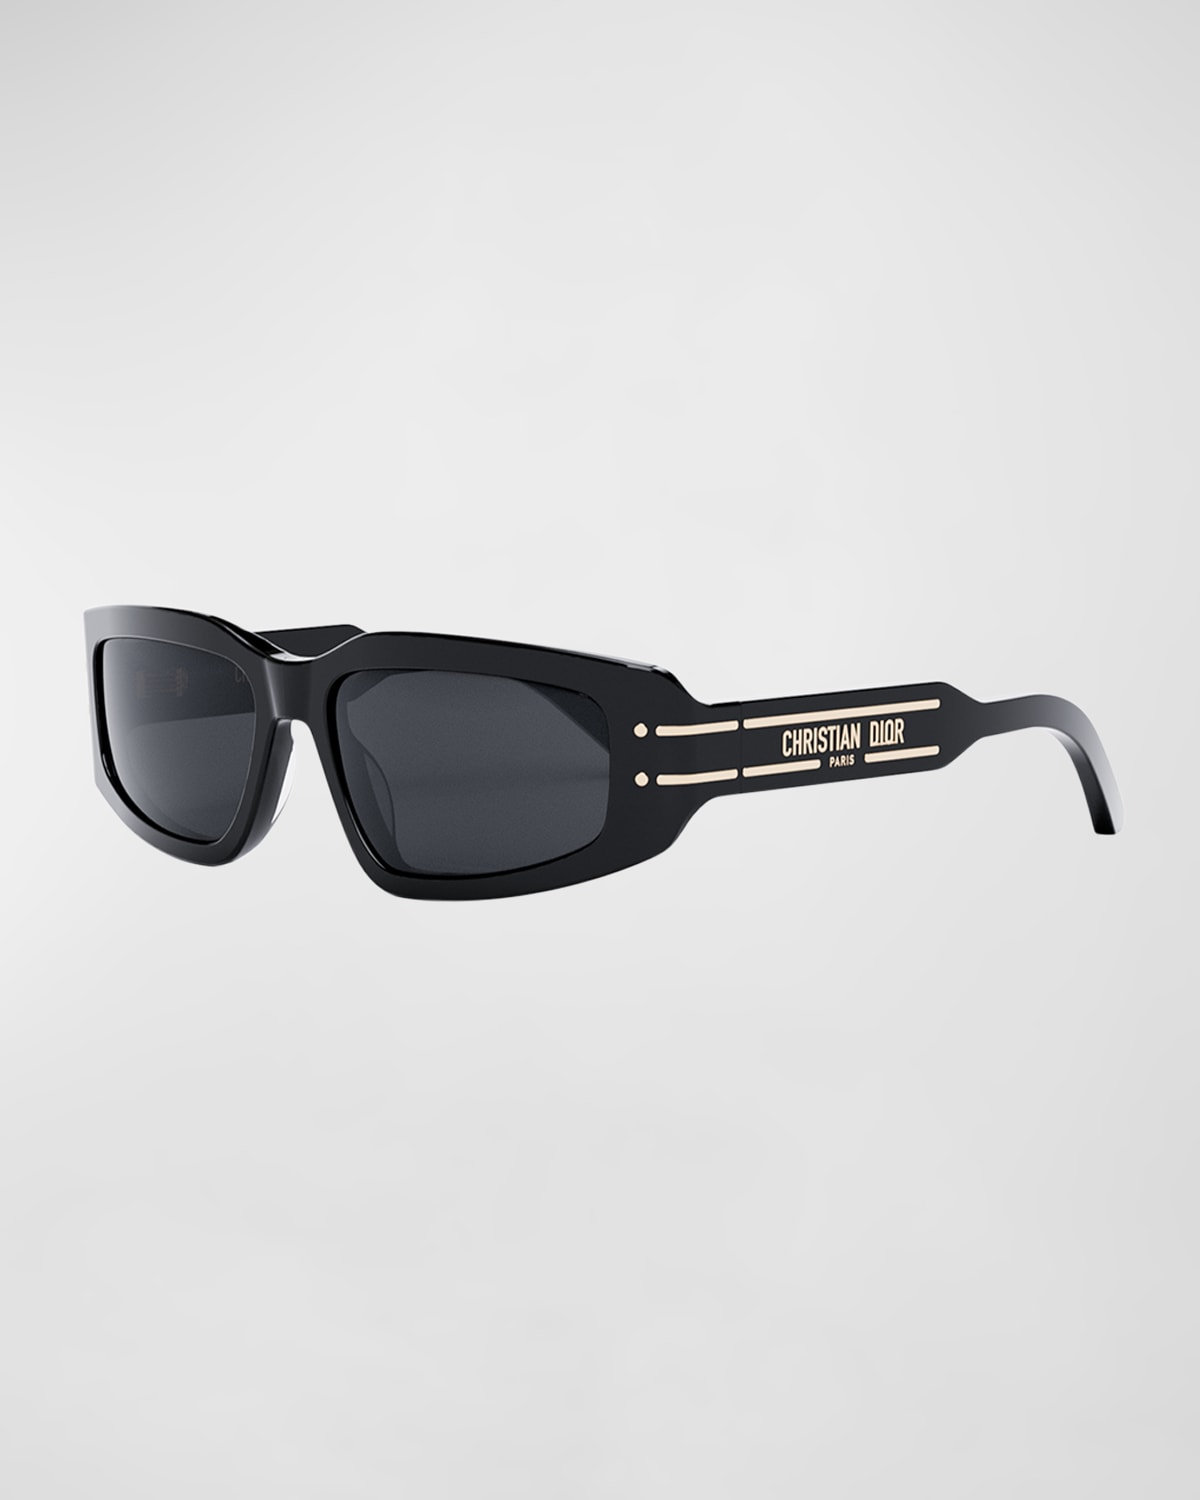 DiorSignature S9U Sunglasses